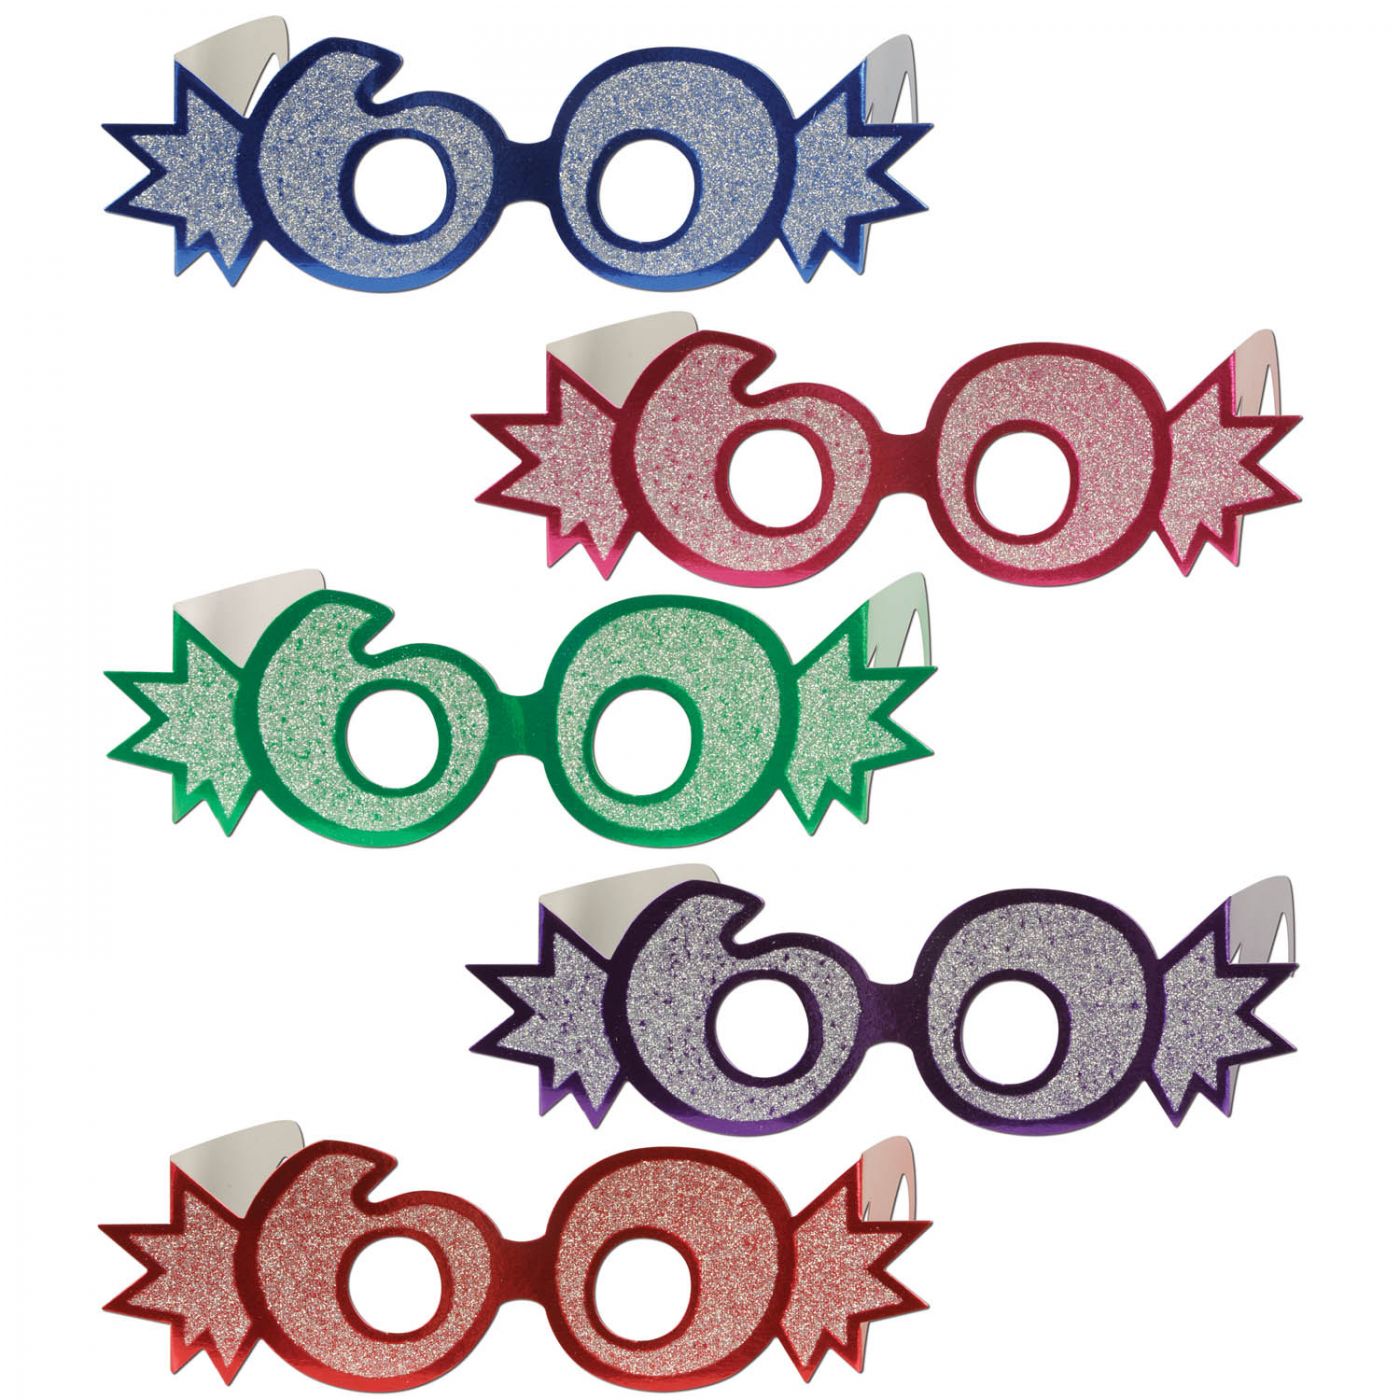  60  Glittered Foil Eyeglasses (25) image